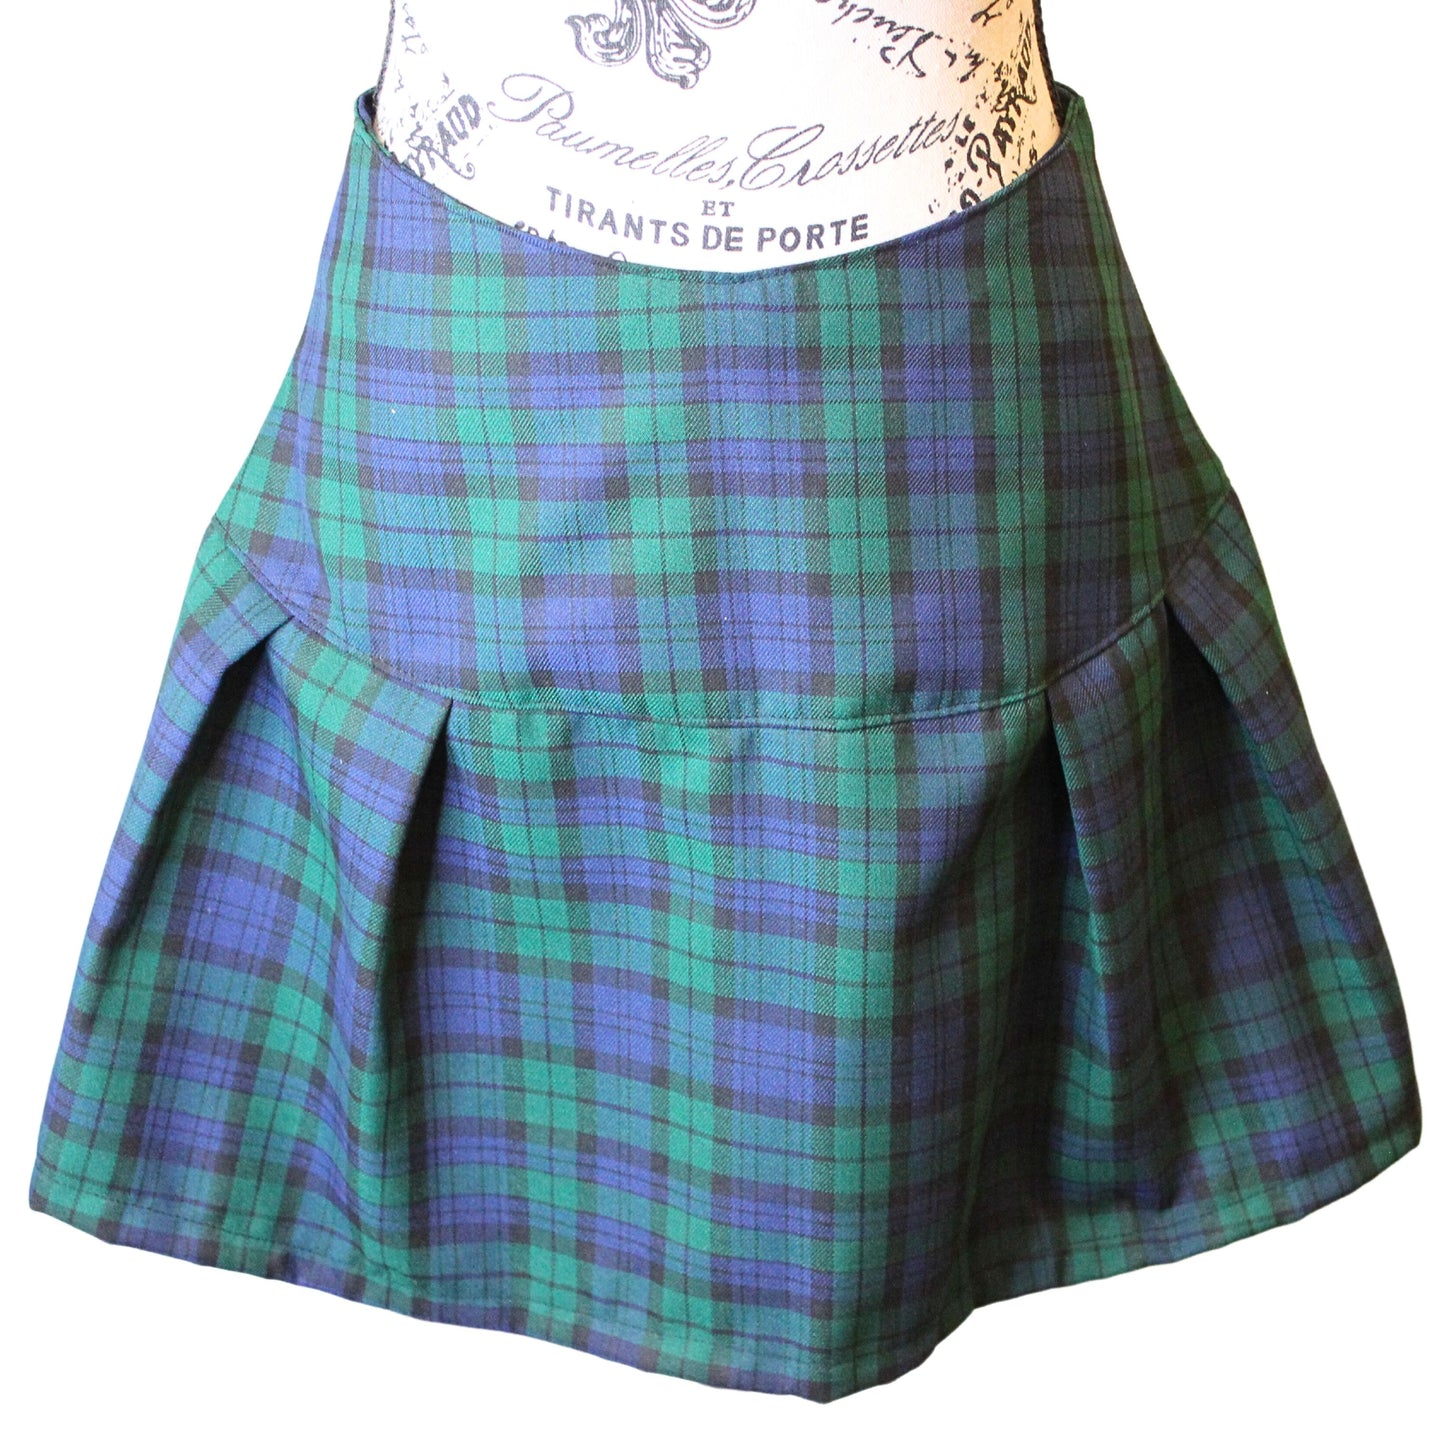 The VM Kilt Skirt